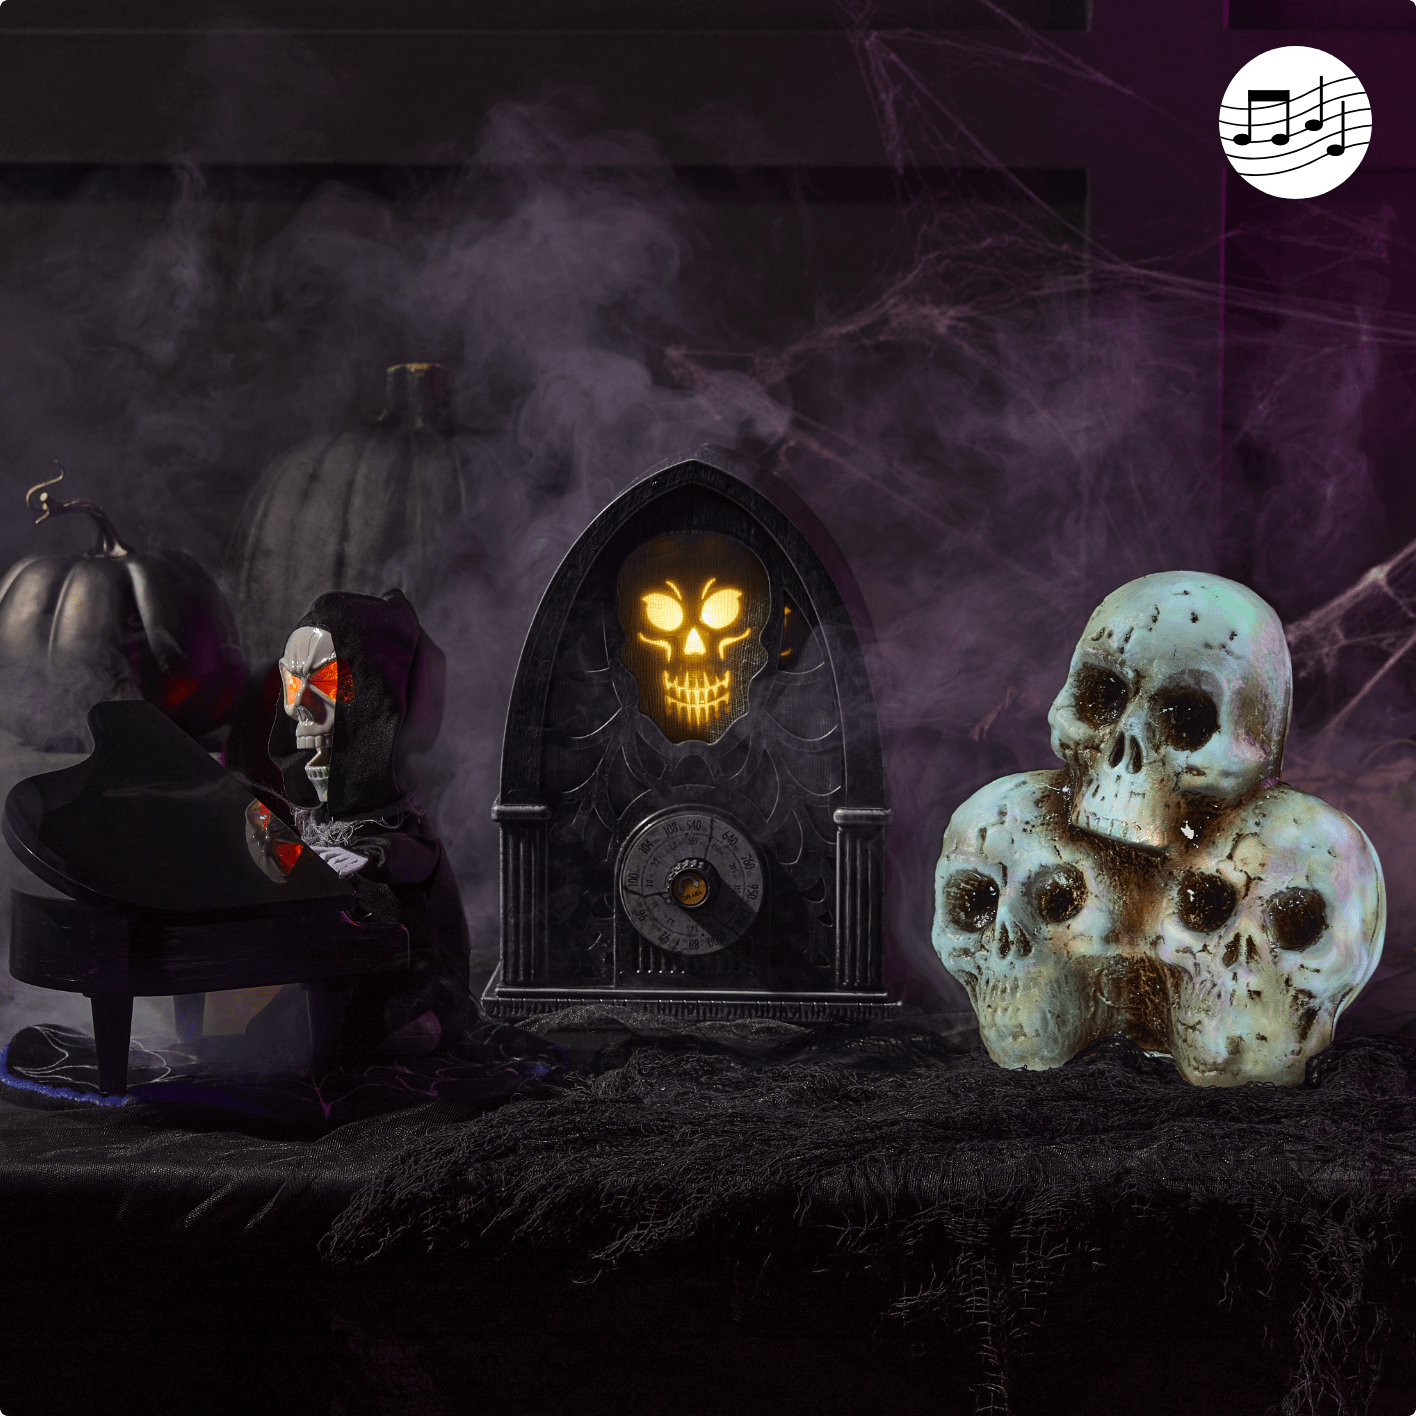 Halloween skull decor set up on table.